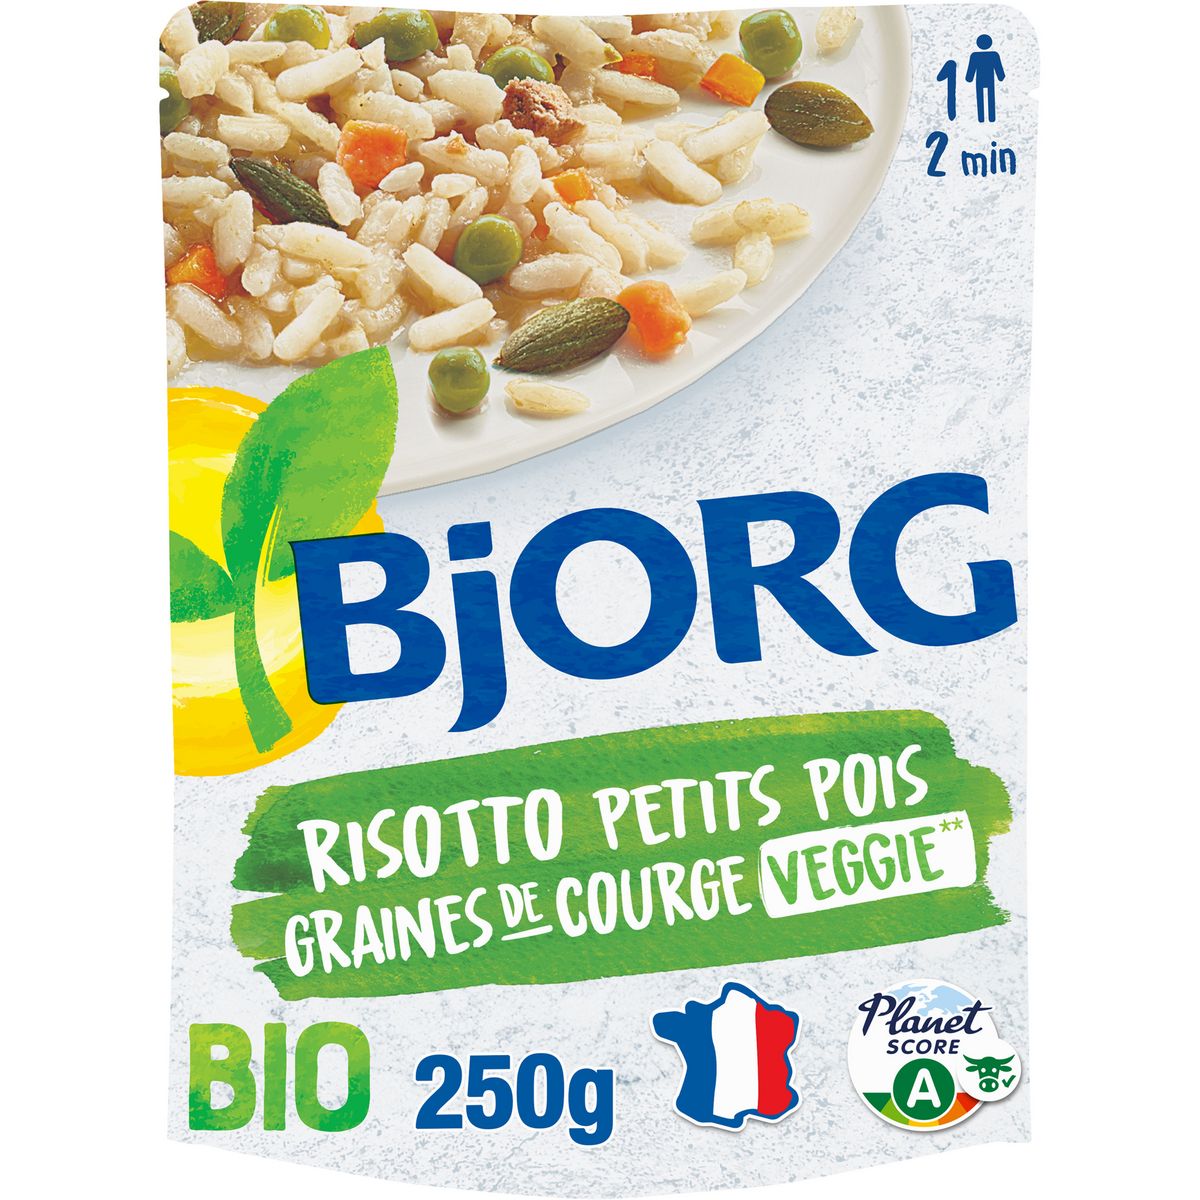 BJORG Risotto petits pois graines de courge bio veggie sachet express 1 personne 250g